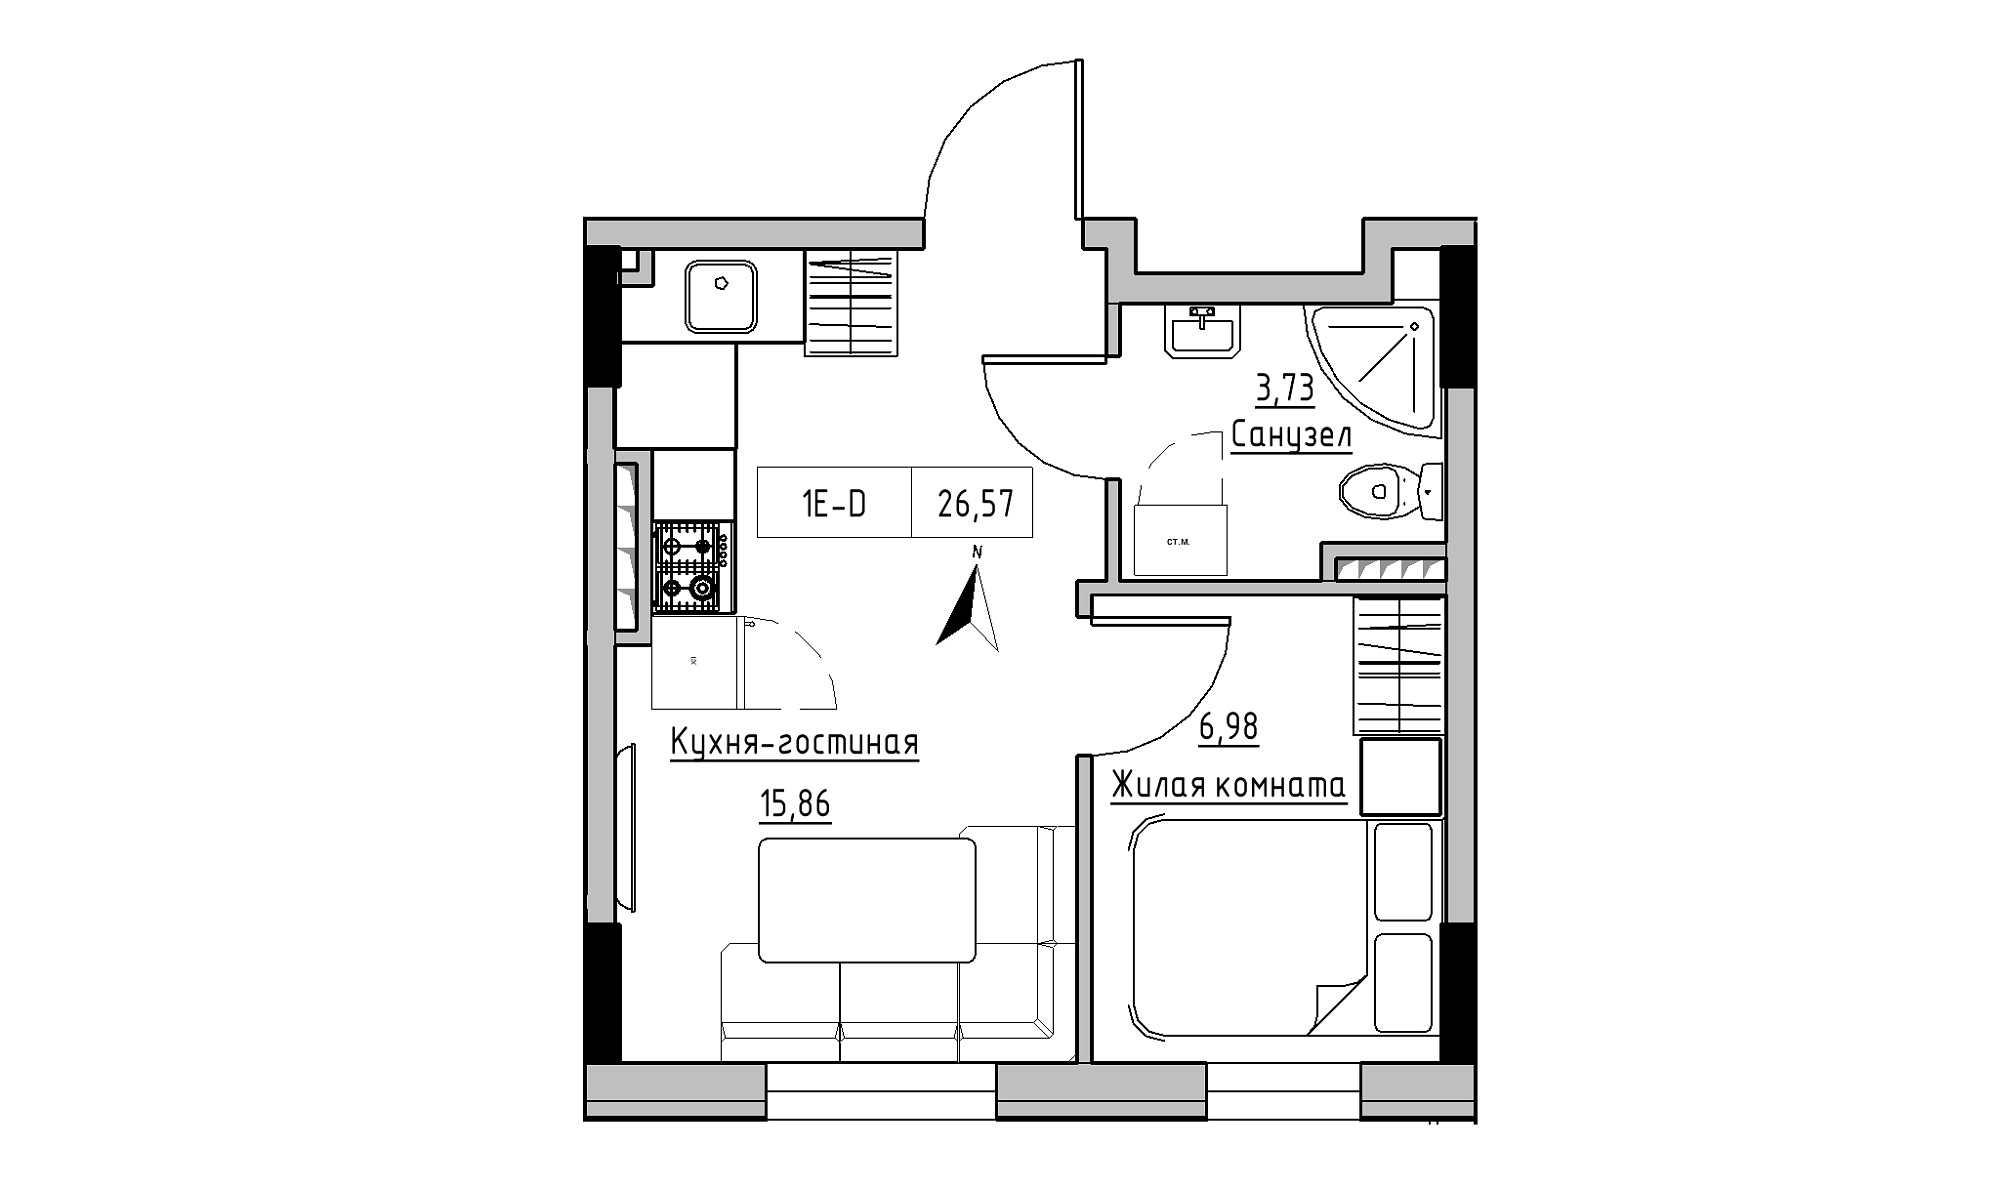 Планировка 1-к квартира площей 26.57м2, KS-025-04/0012.